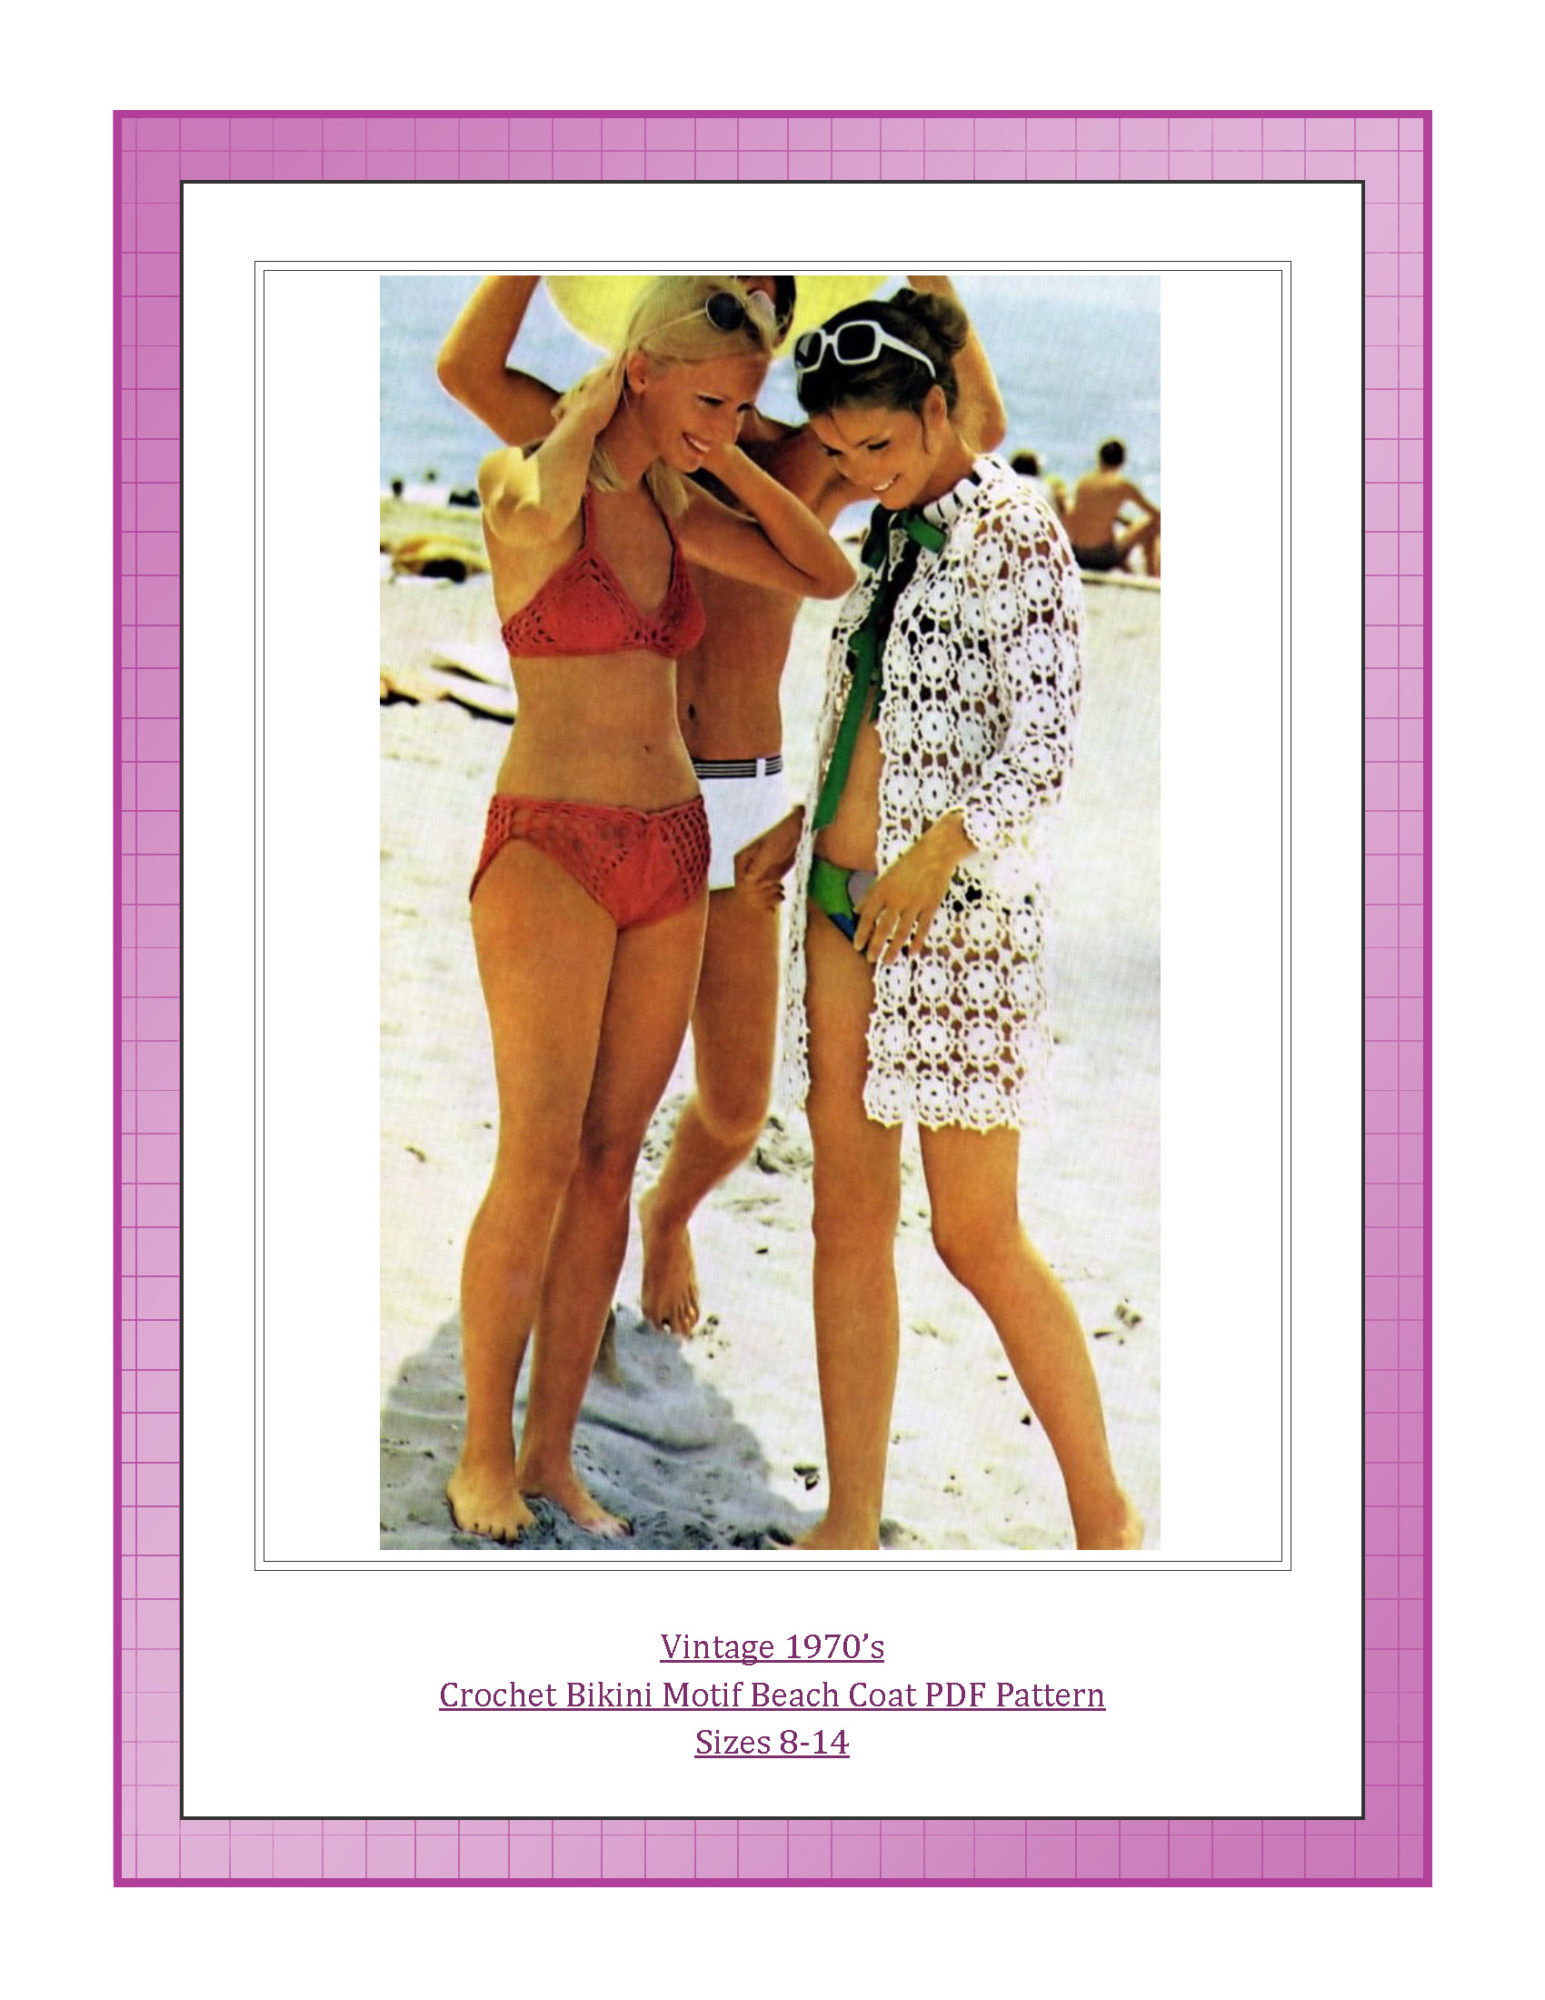 Vintage 1970’s Crochet Bikini Motif Beach Coat PDF Pattern Sizes 8-14